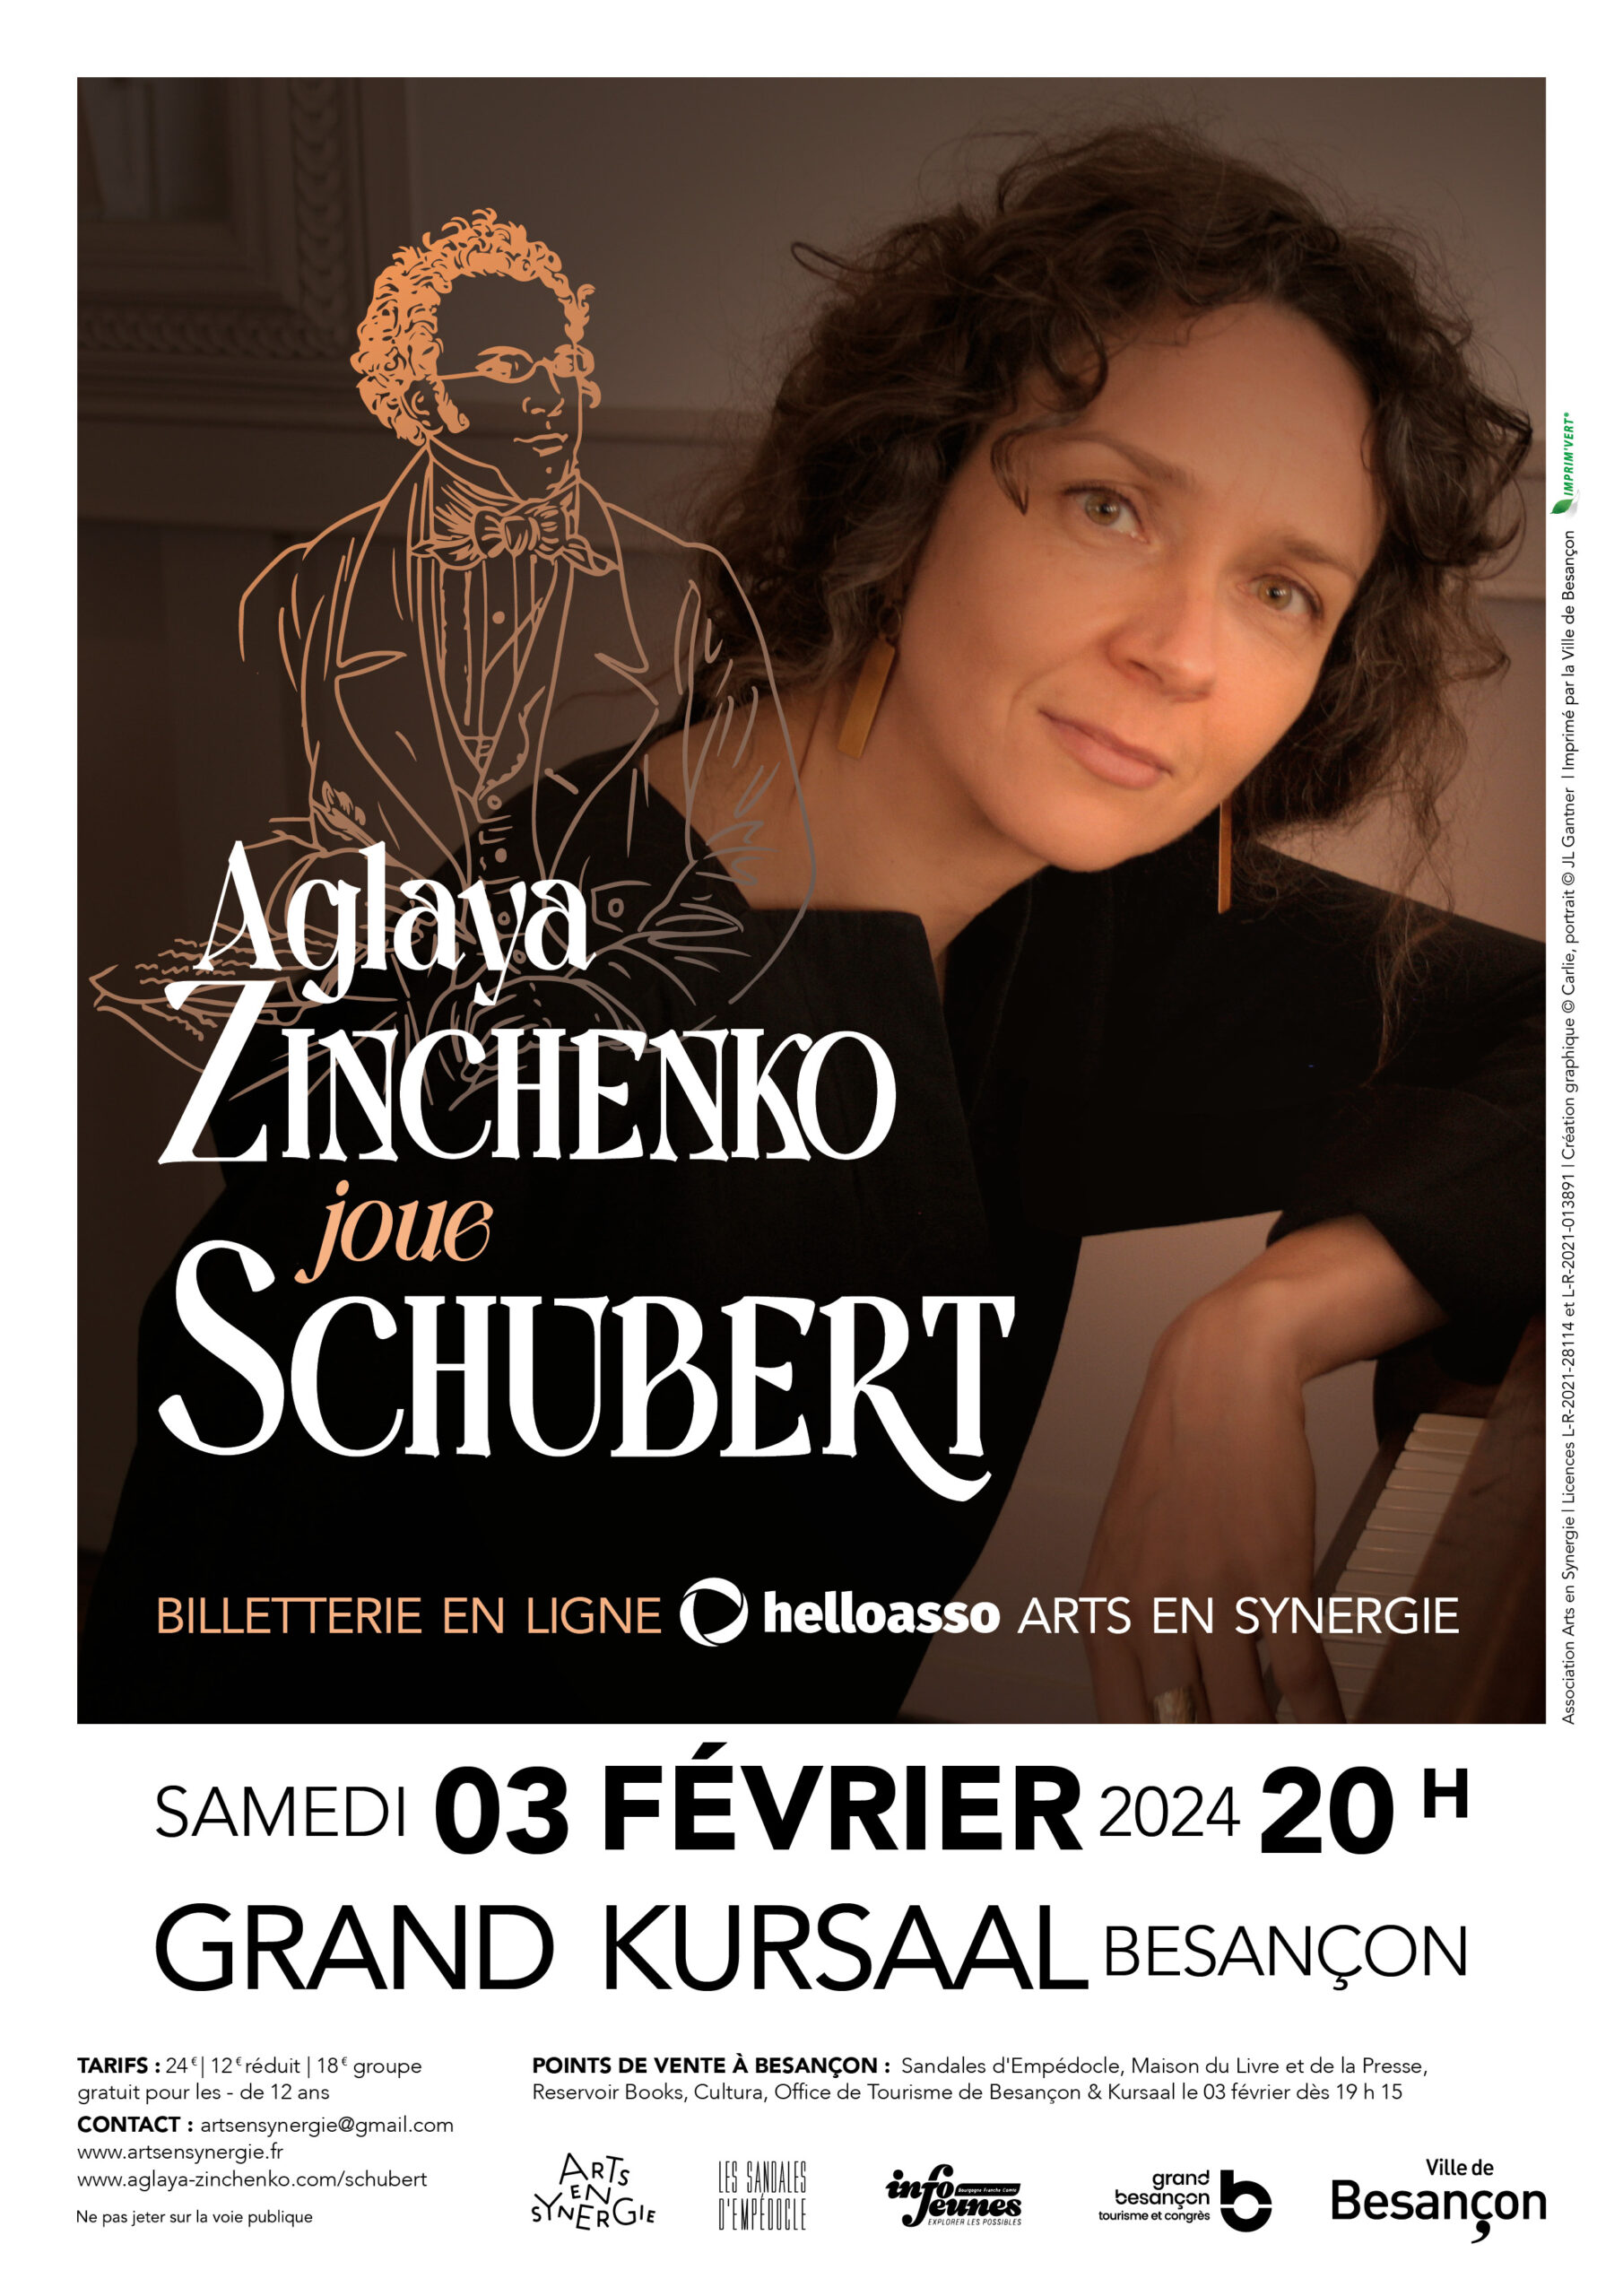 Aglaya Zinchenko joue Schubert au Kursaal le samedi 3 février 2024